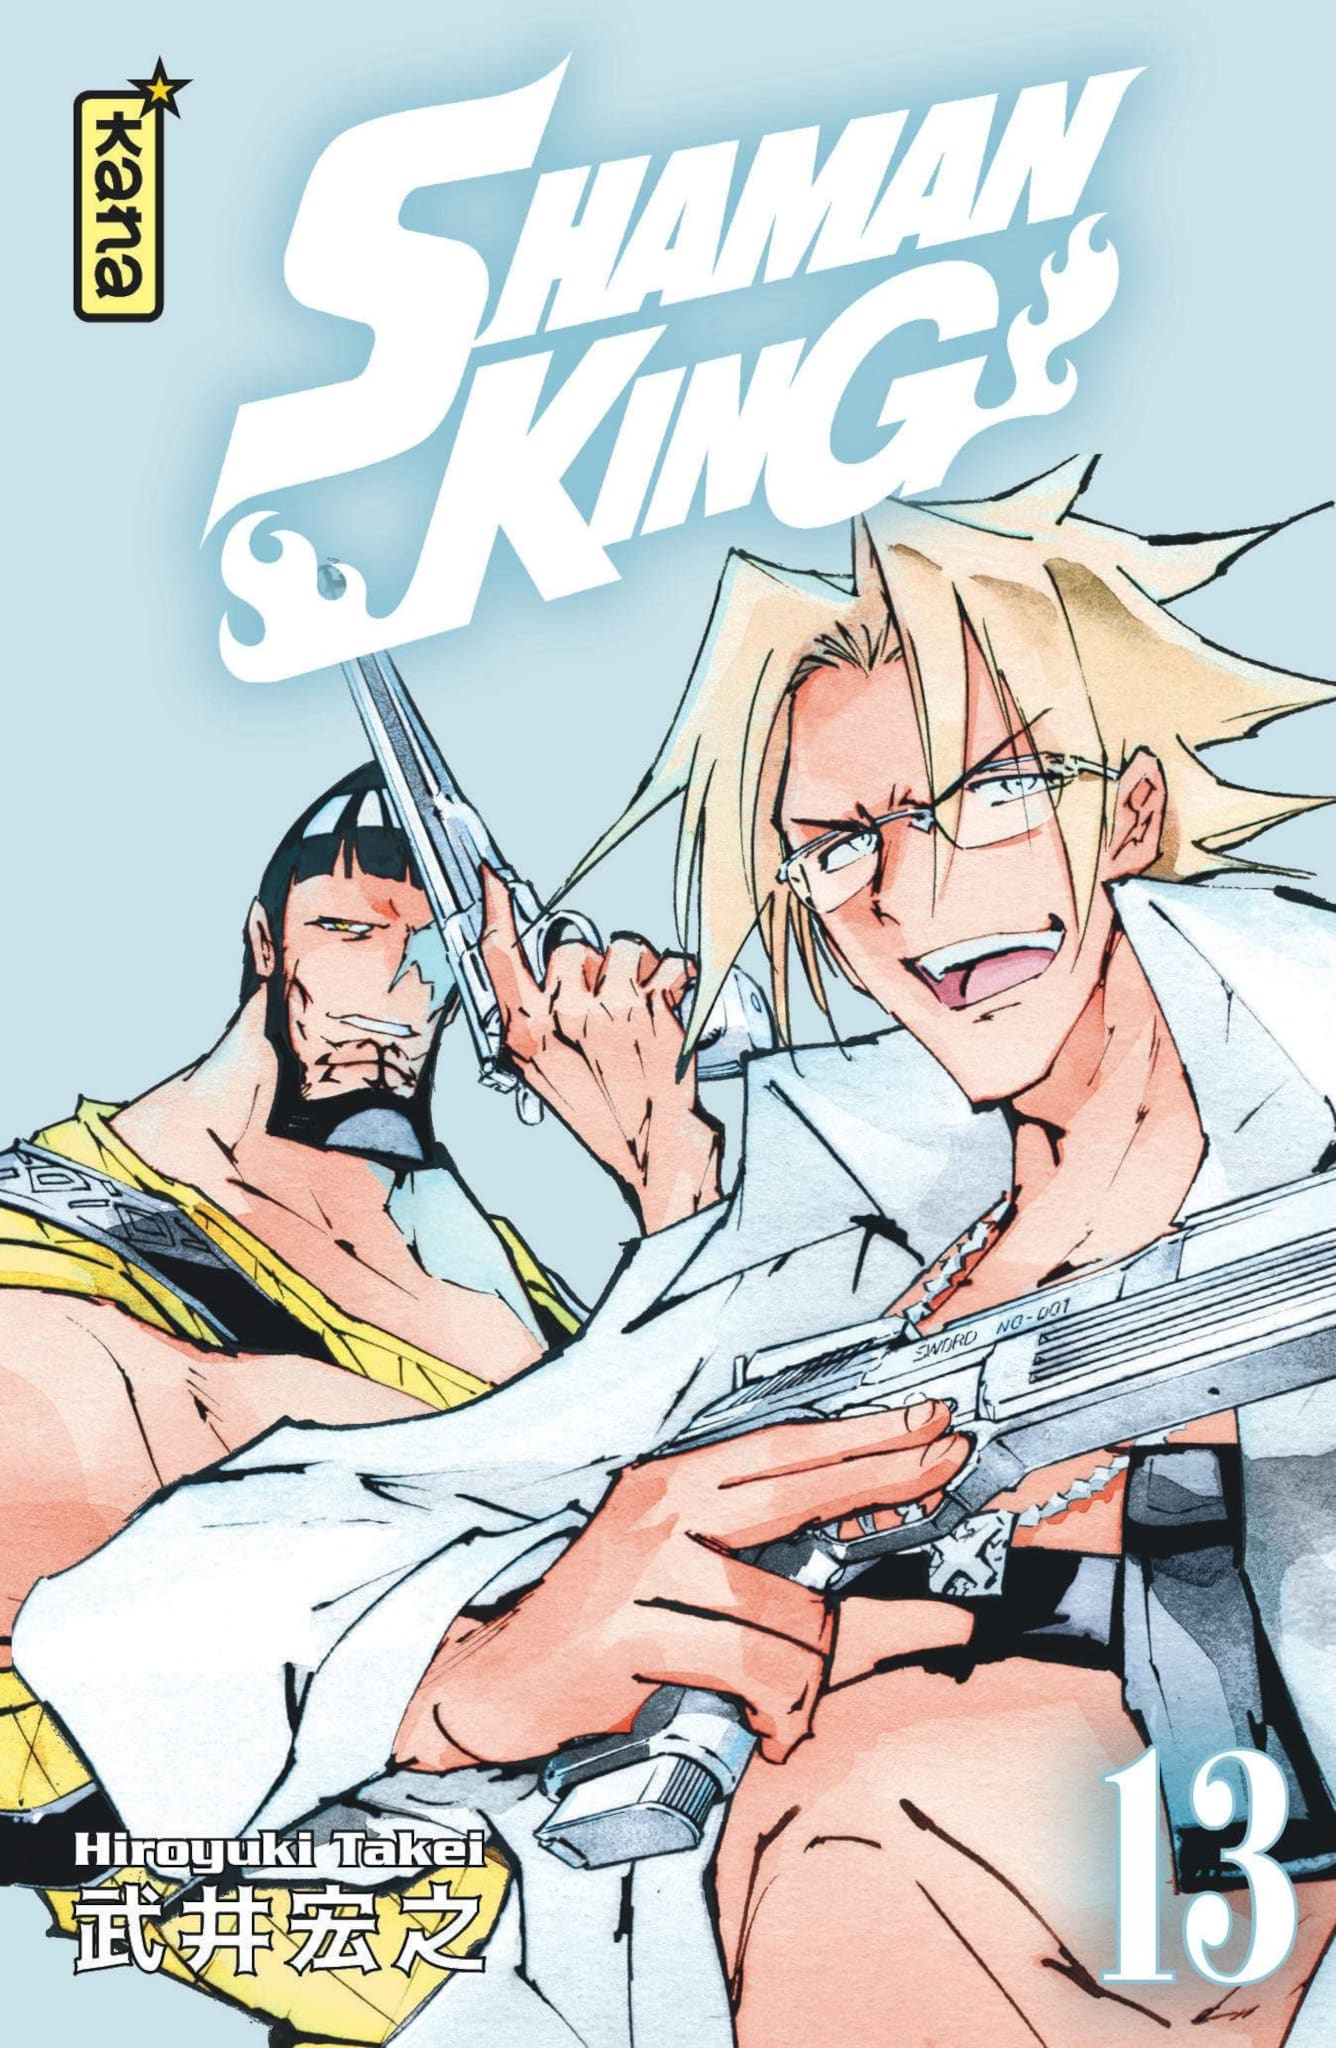 Tome 13 du manga Shaman King - Star Edition